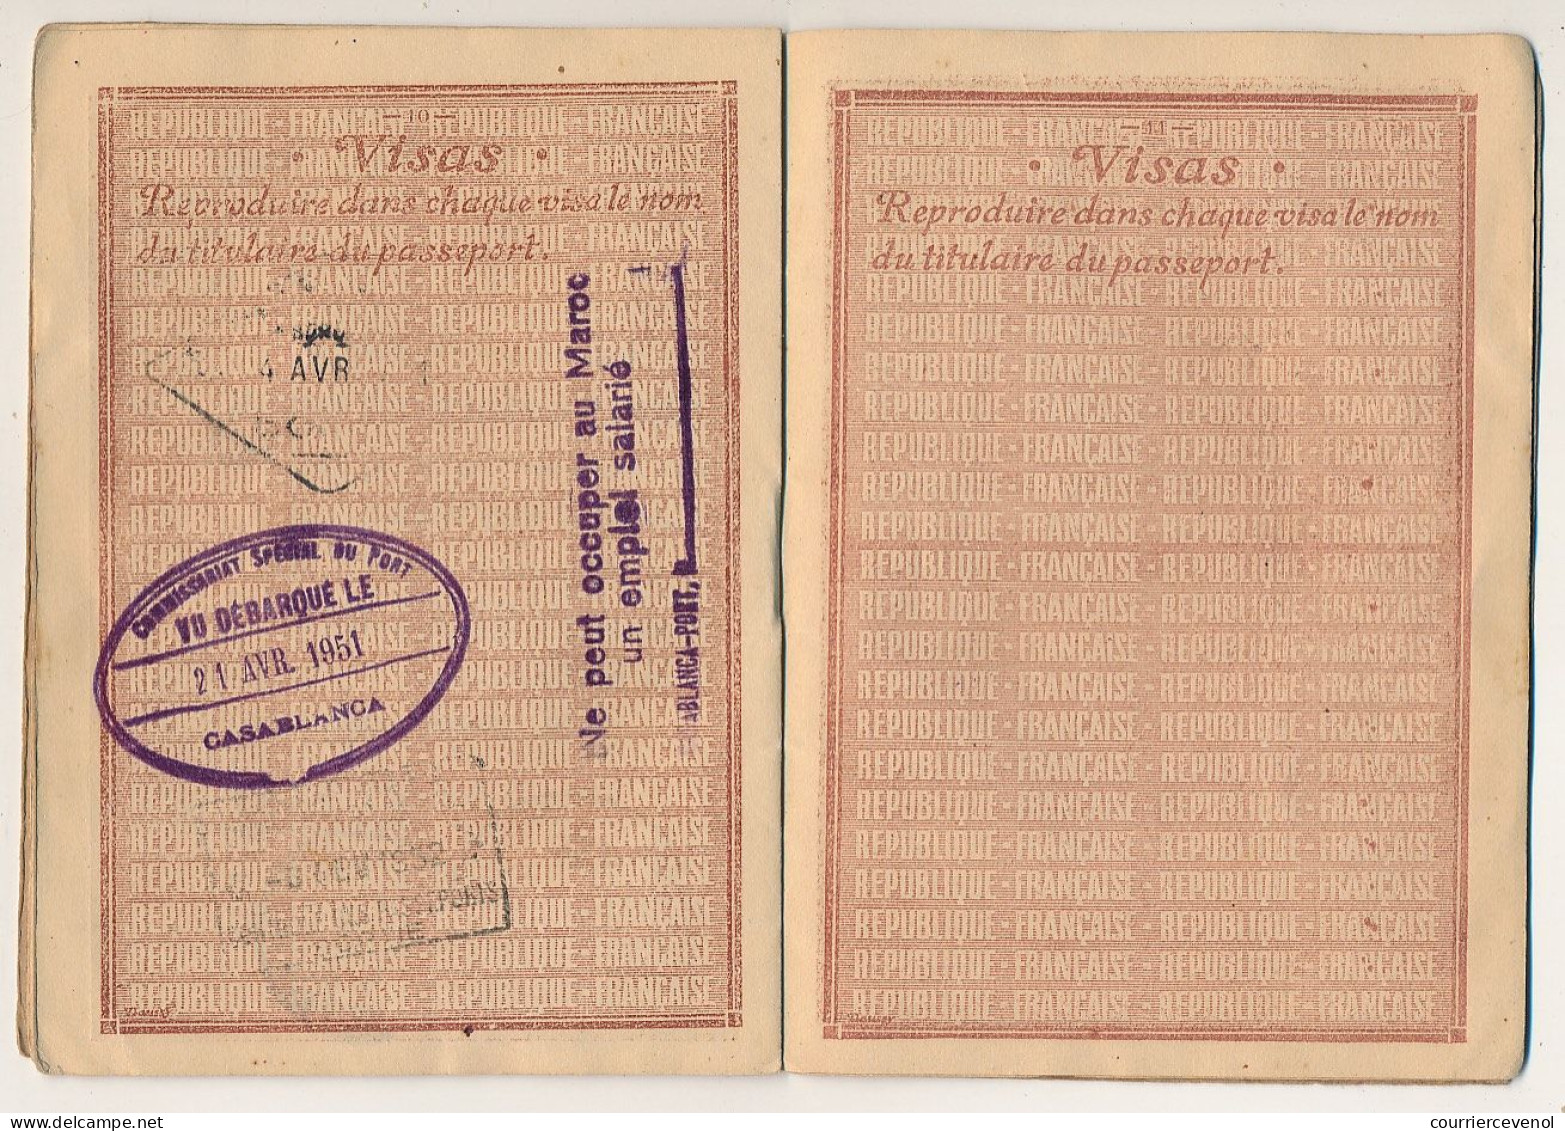 FRANCE - Passeport délivré à NICE - 1949/1951 - 60F + complément tarif 1946 / Fiscal renouvellement 700 F + visas divers